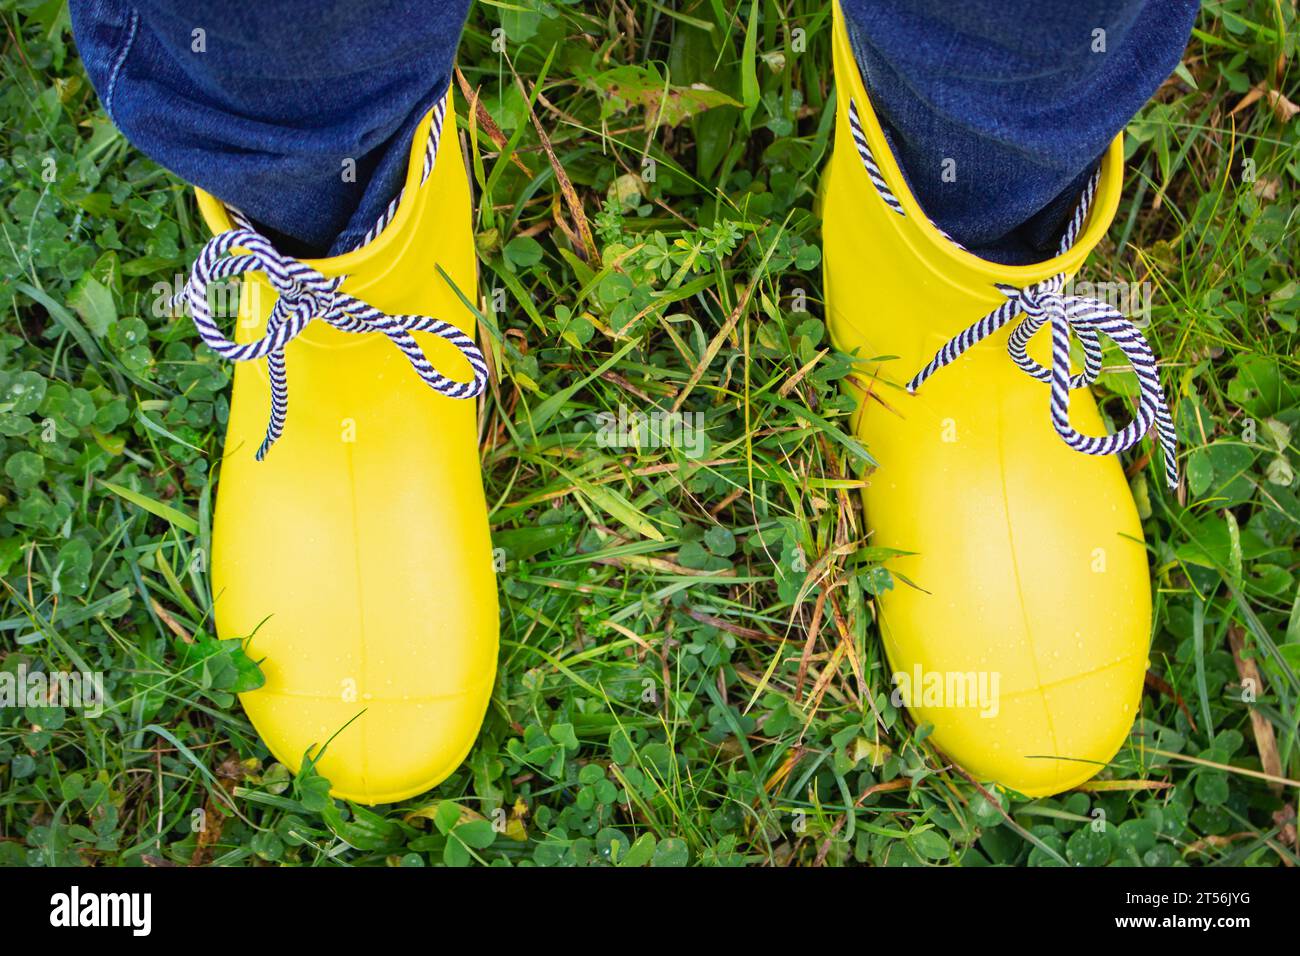 Mujer joven con chubasquero amarillo y botas de goma en la naturaleza  primaveral Fotografía de stock - Alamy